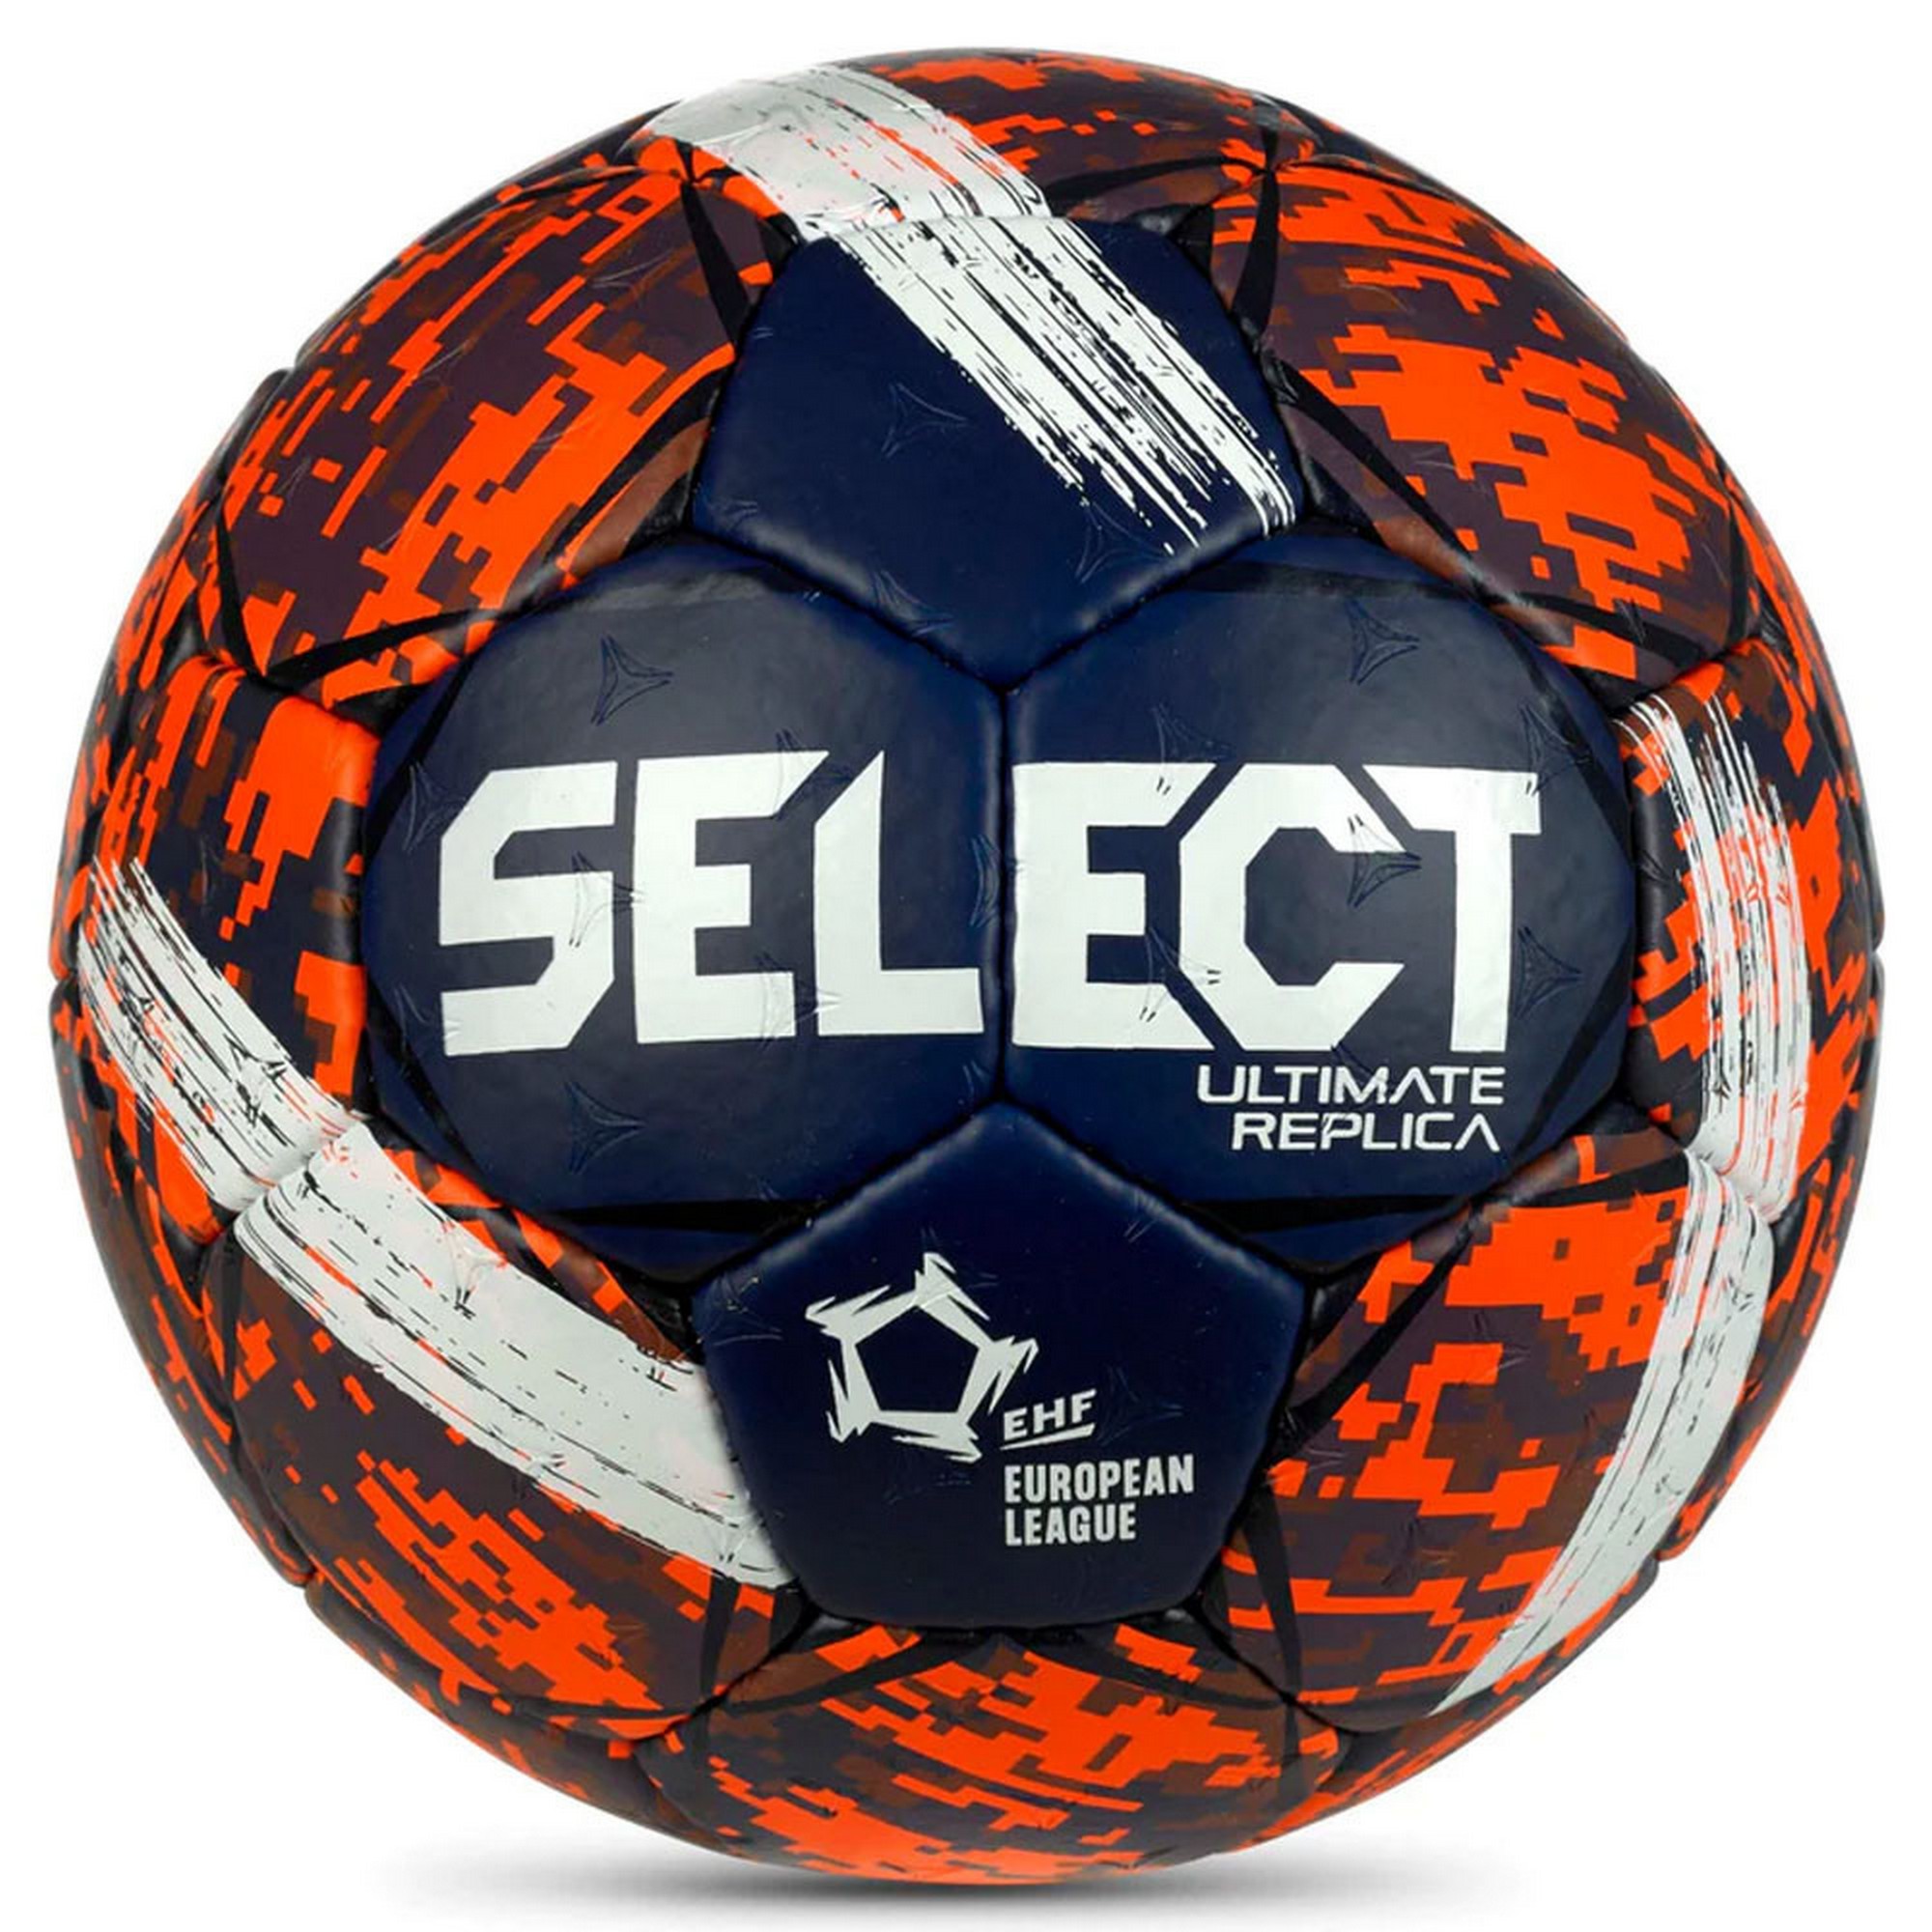 Мяч гандбольный Select Ultimate Replica v23 3570847495 EHF Appr, р.0 - фото 1